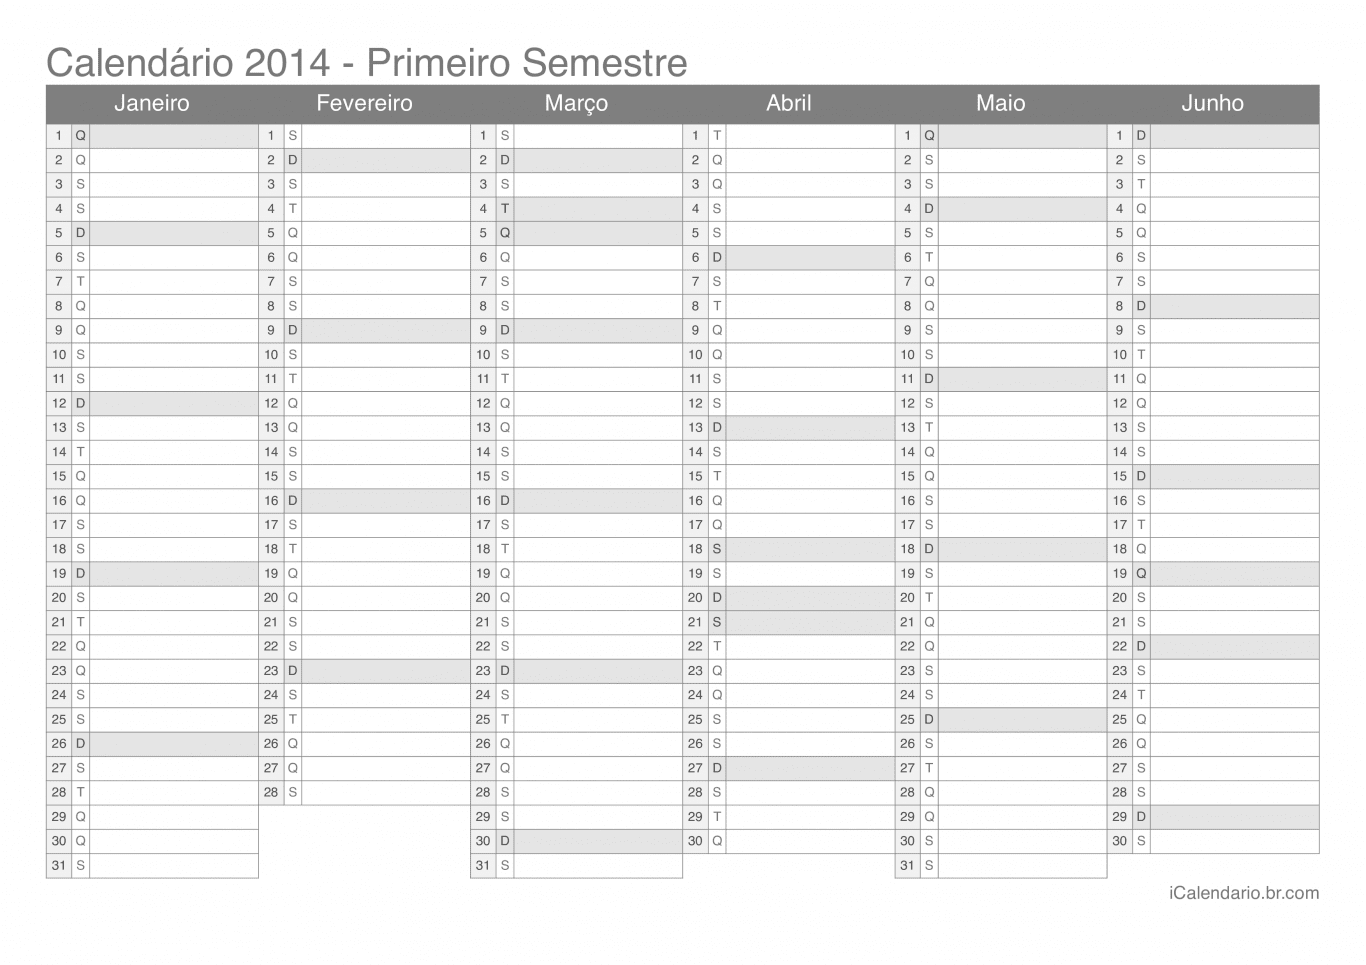 Calendário por semestre 2014